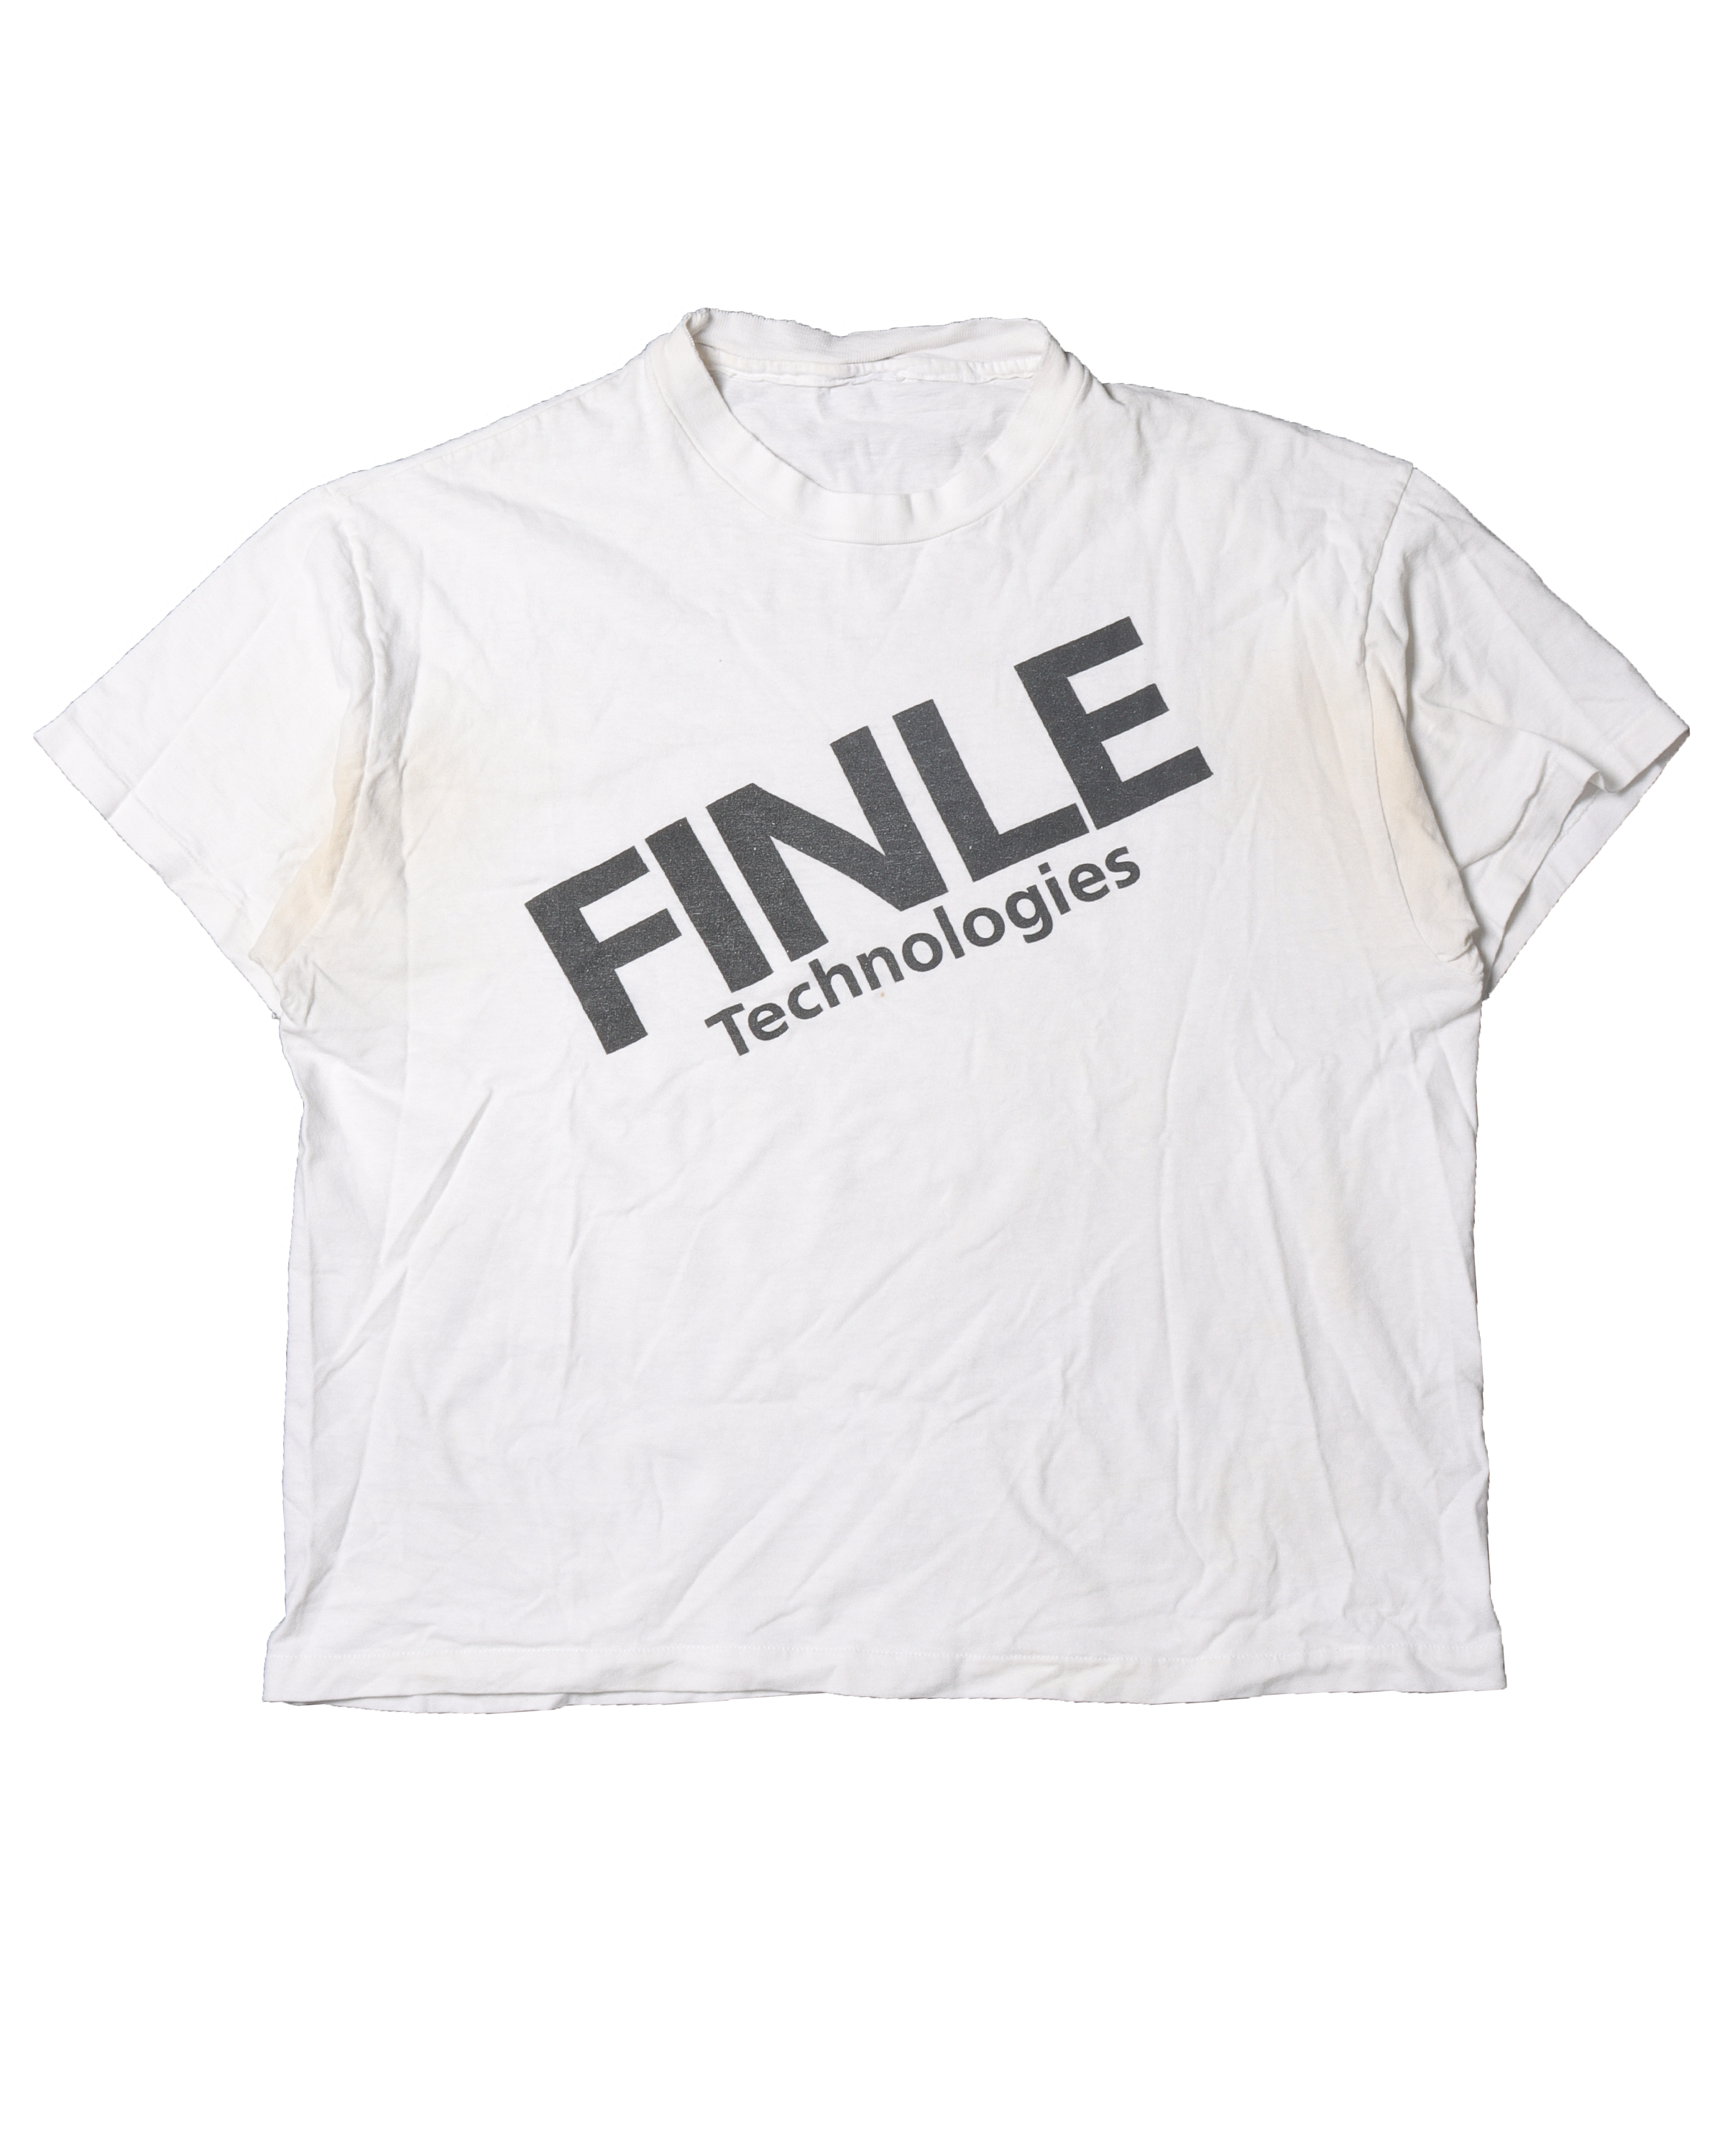 Finle Technologies T-Shirt